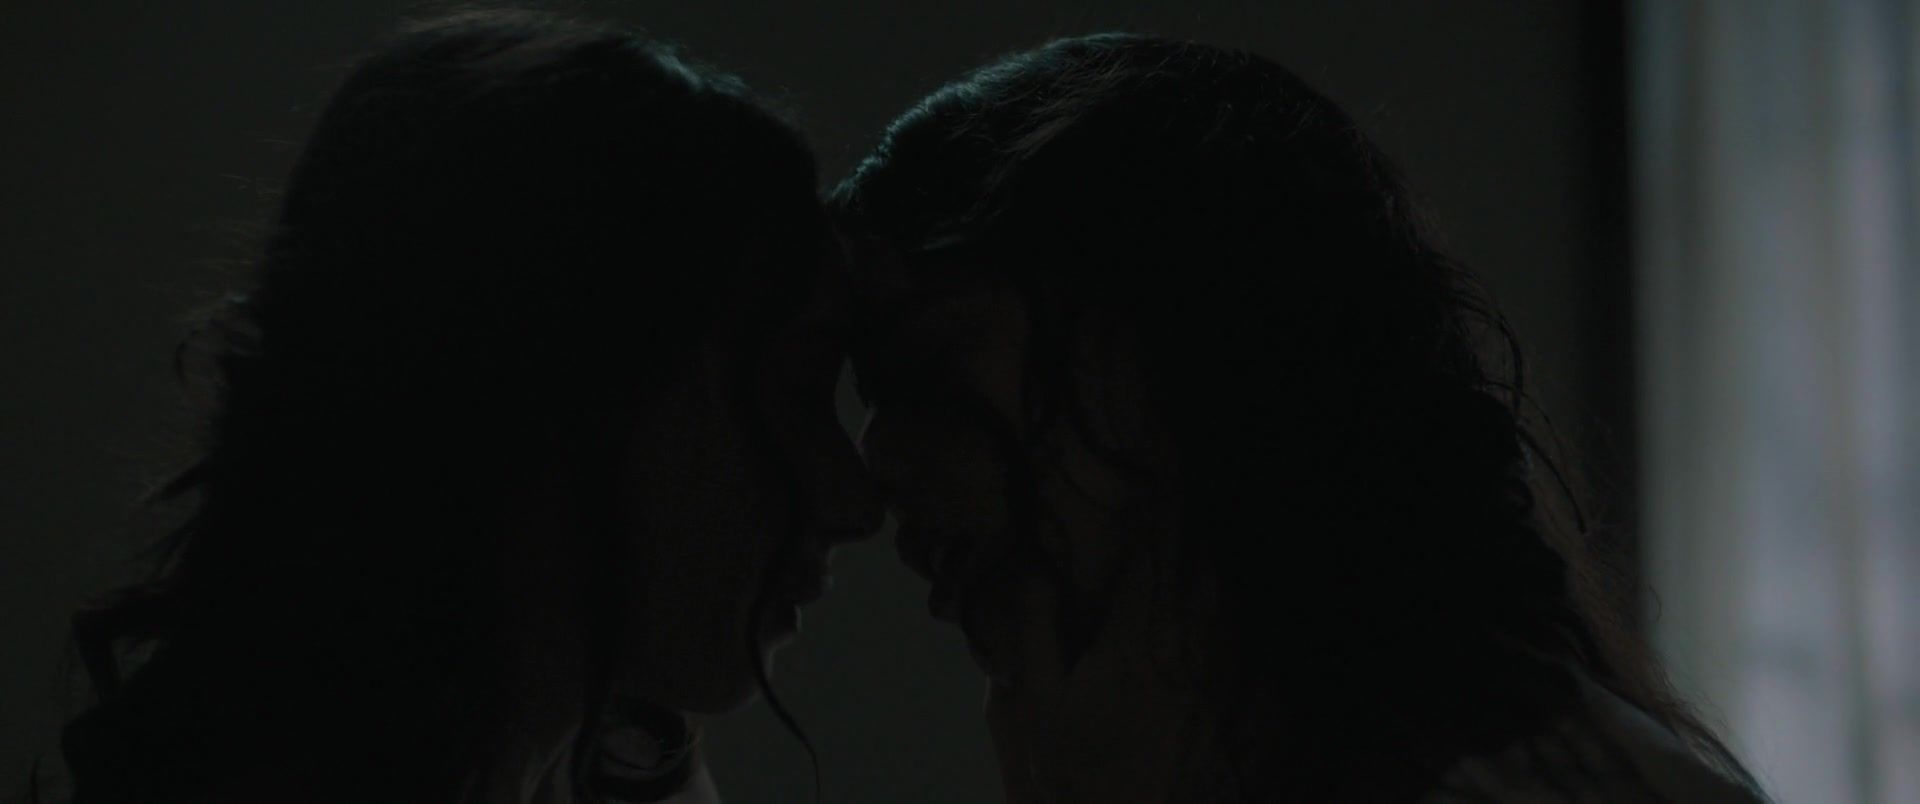 LupoPorno Novitiate - Lesbian Kiss Uncensored - 1